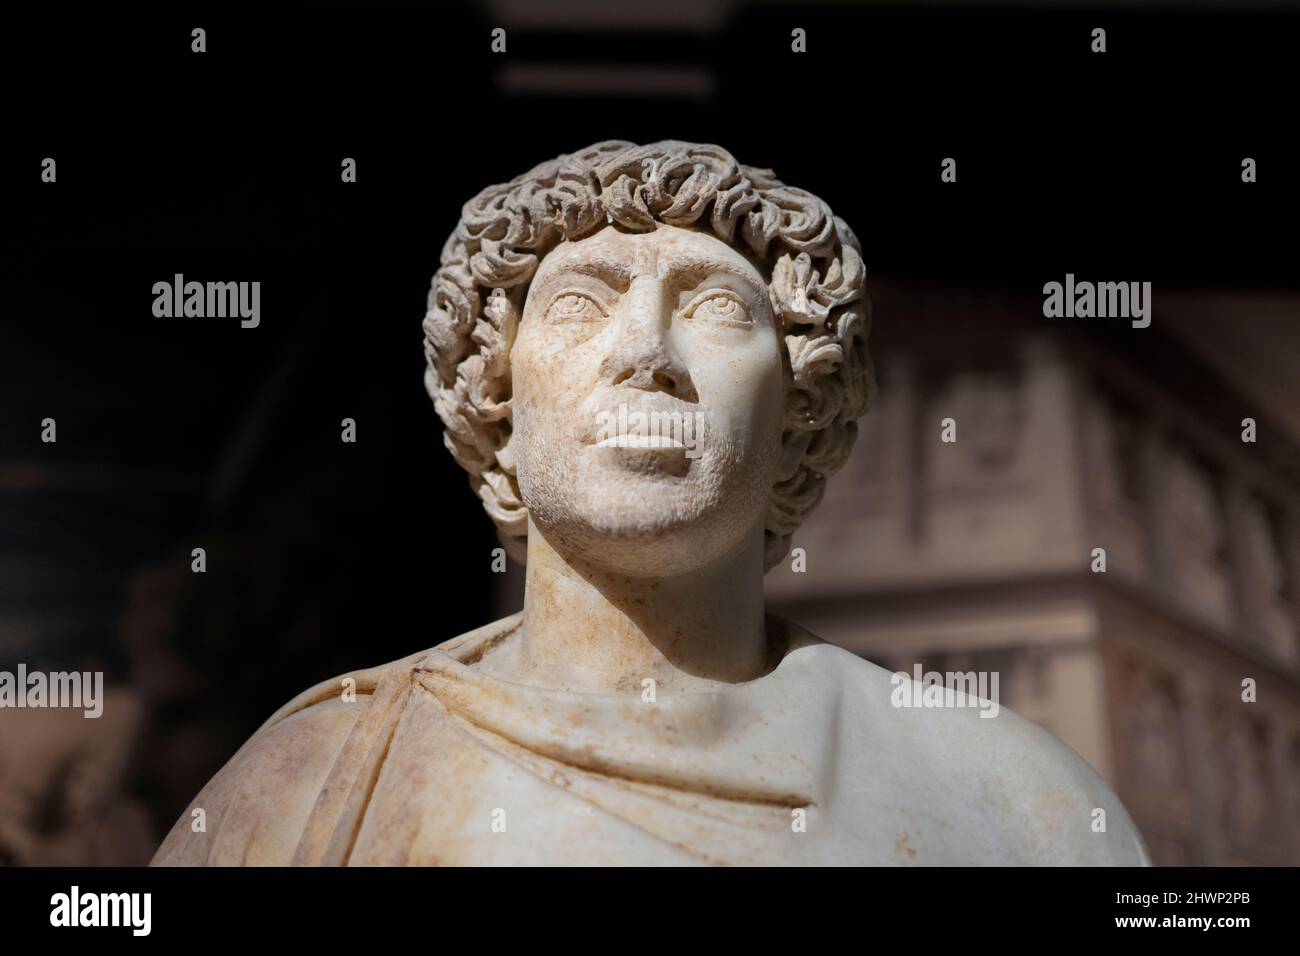 Statua di marmo di un Giudice romano di Afrodisia antica città, 5th secolo d.C. Museo Archeologico di Istanbul, Turchia. Foto Stock